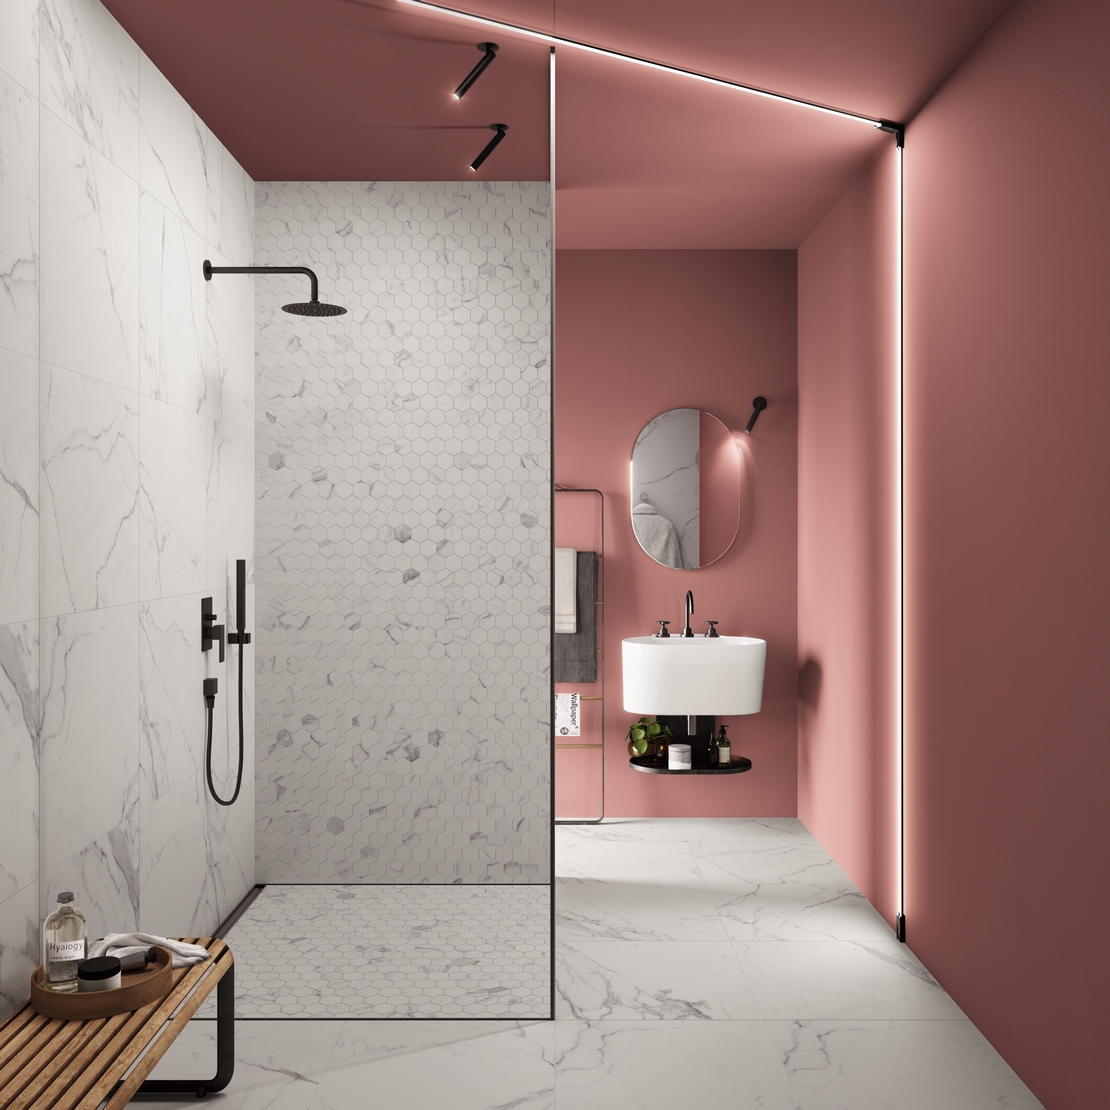 Luxuriöses Badezimmer im Industriellen Stil mit Dusche. Weiße Marmoroptik und Rosa Wände - Inspirationen Iperceramica